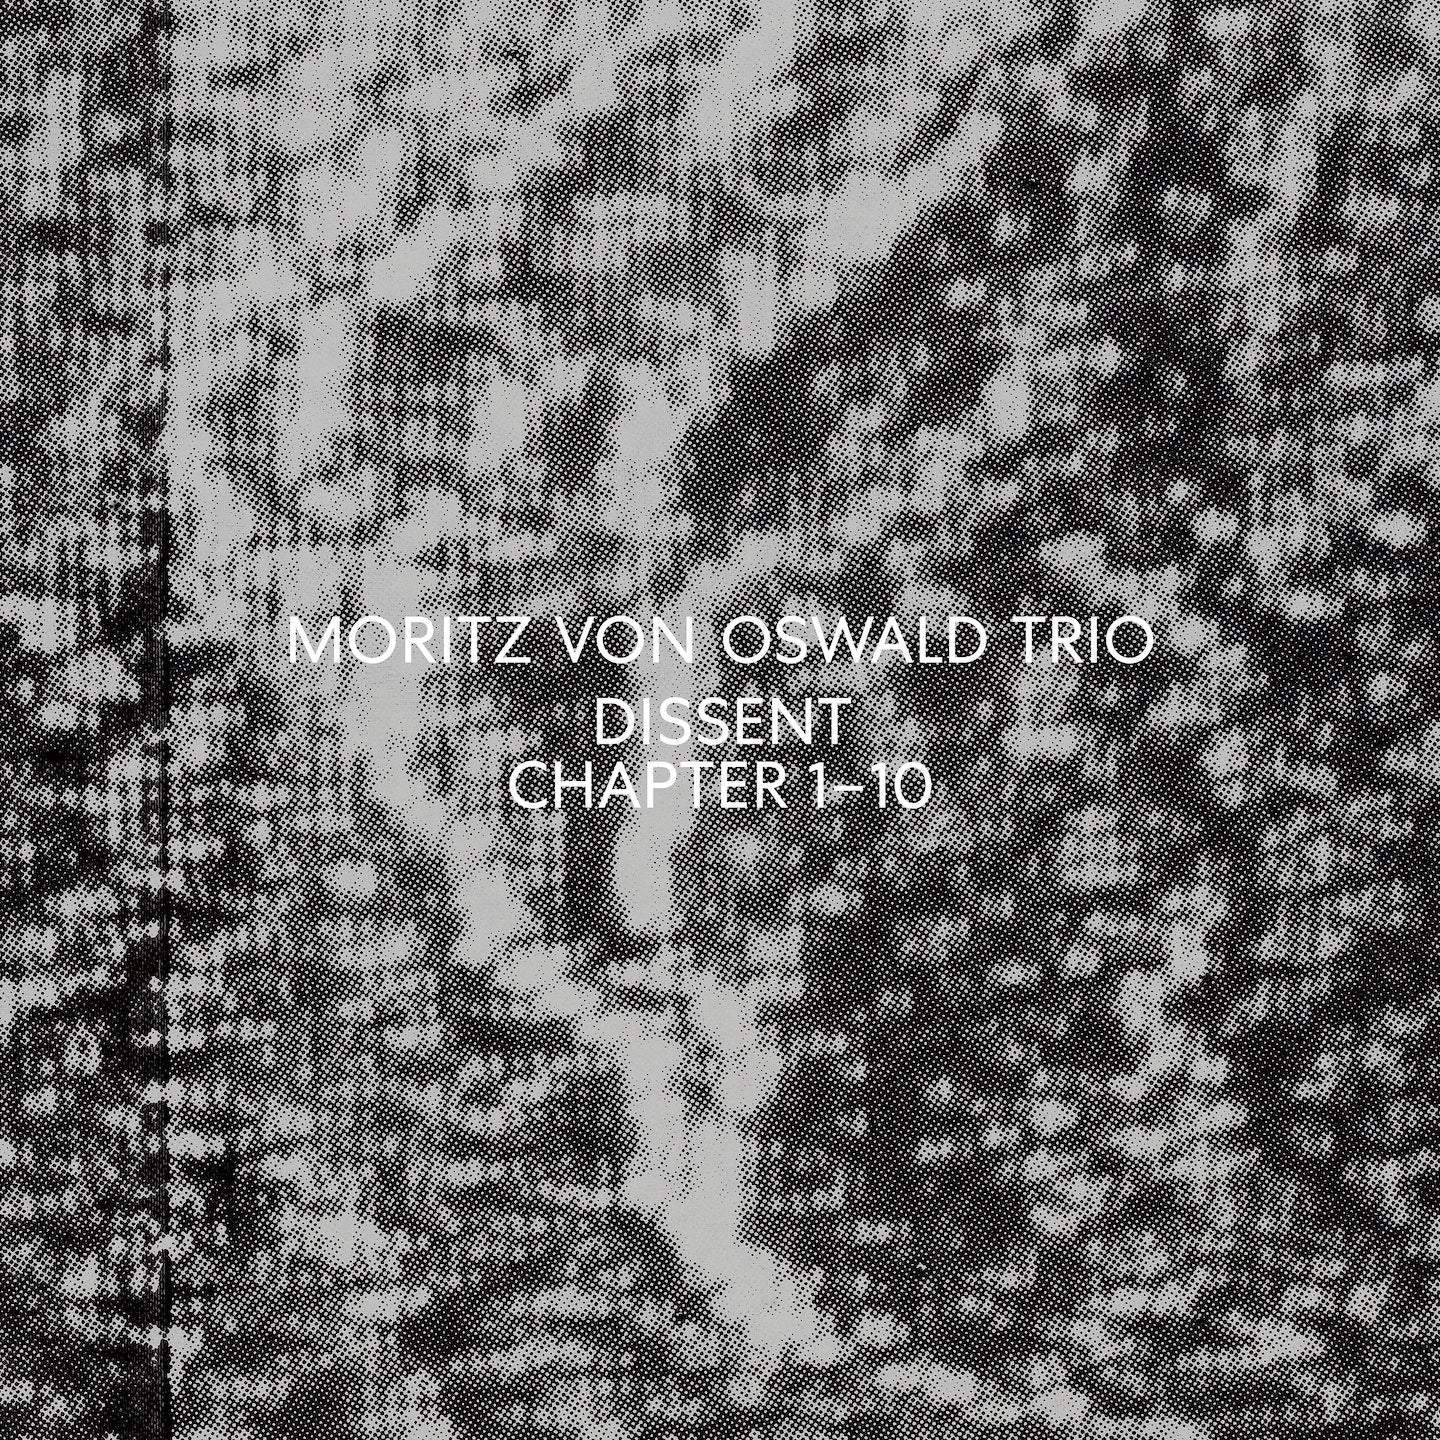 MORITZ VON OSWALD TRIO - Dissent - CD